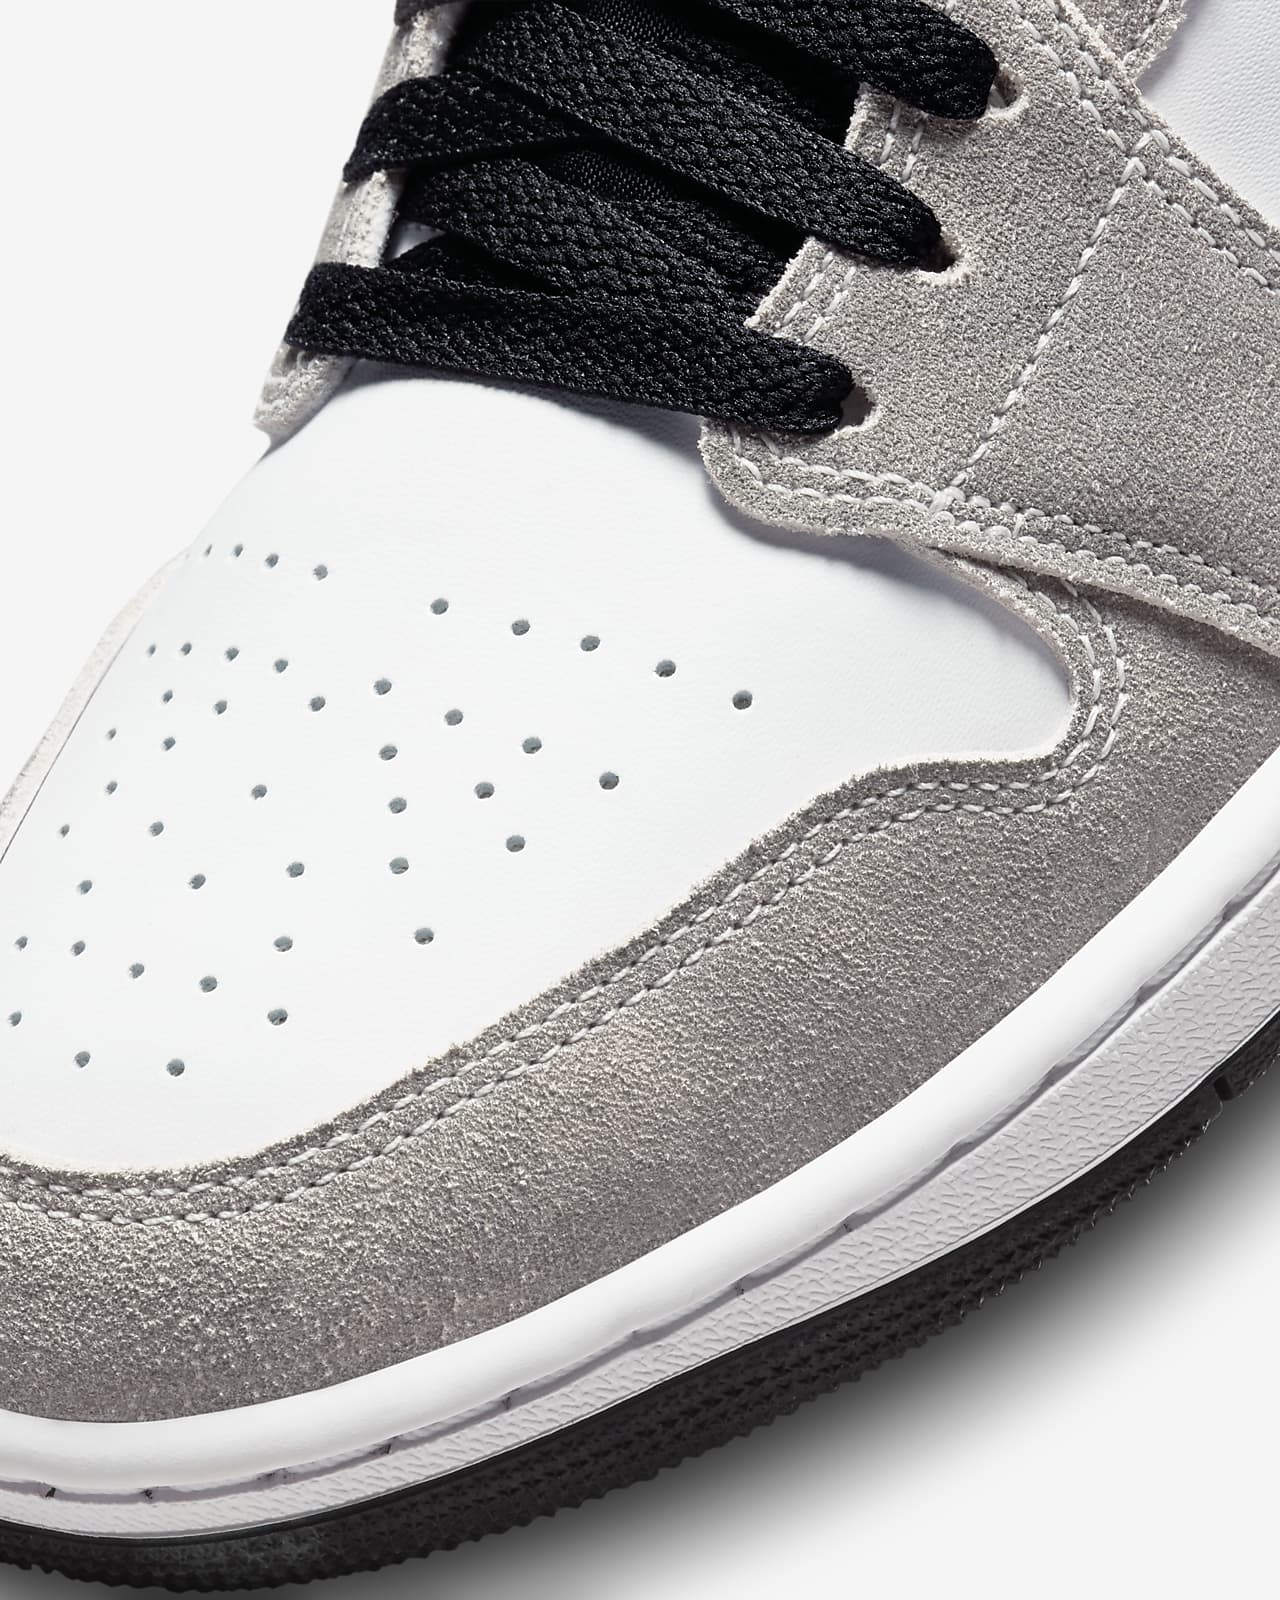 Outlook totaal Spectaculair Air Jordan Low SE Men's Shoes. Nike.com